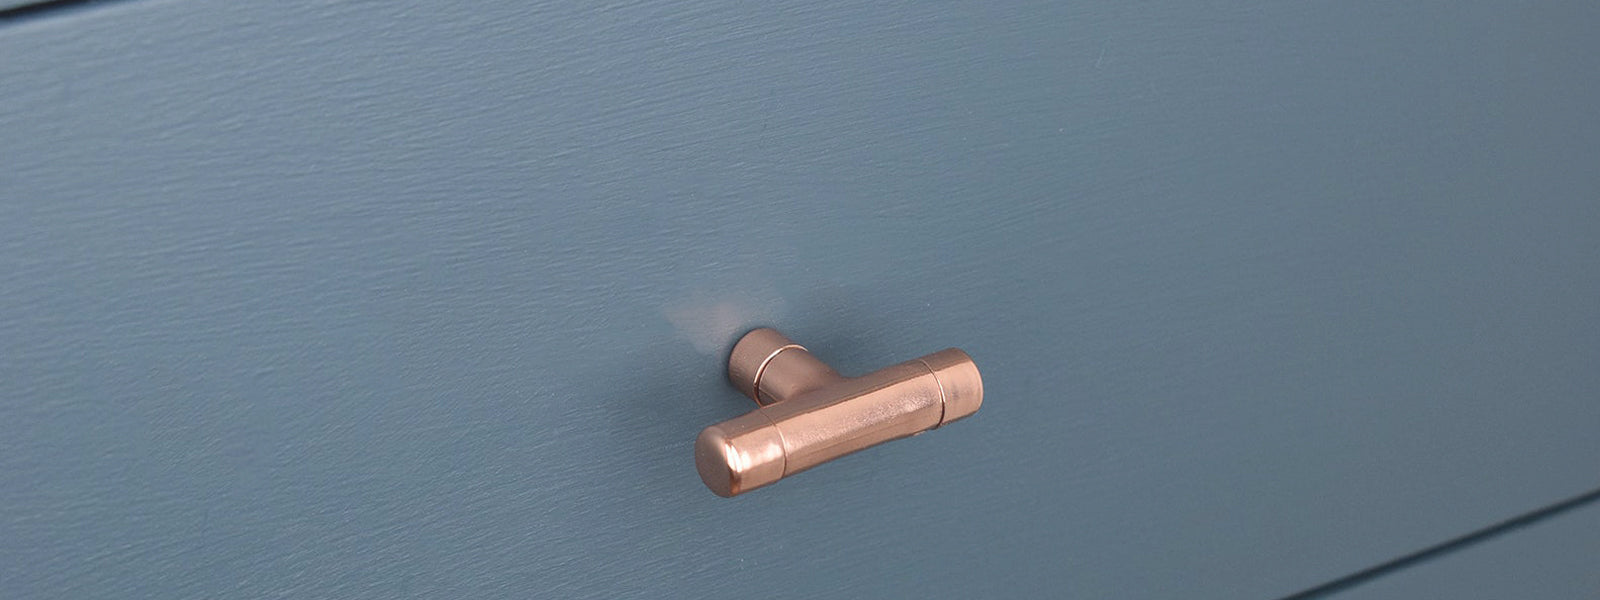 Copper drawer knob, kitchen hardware